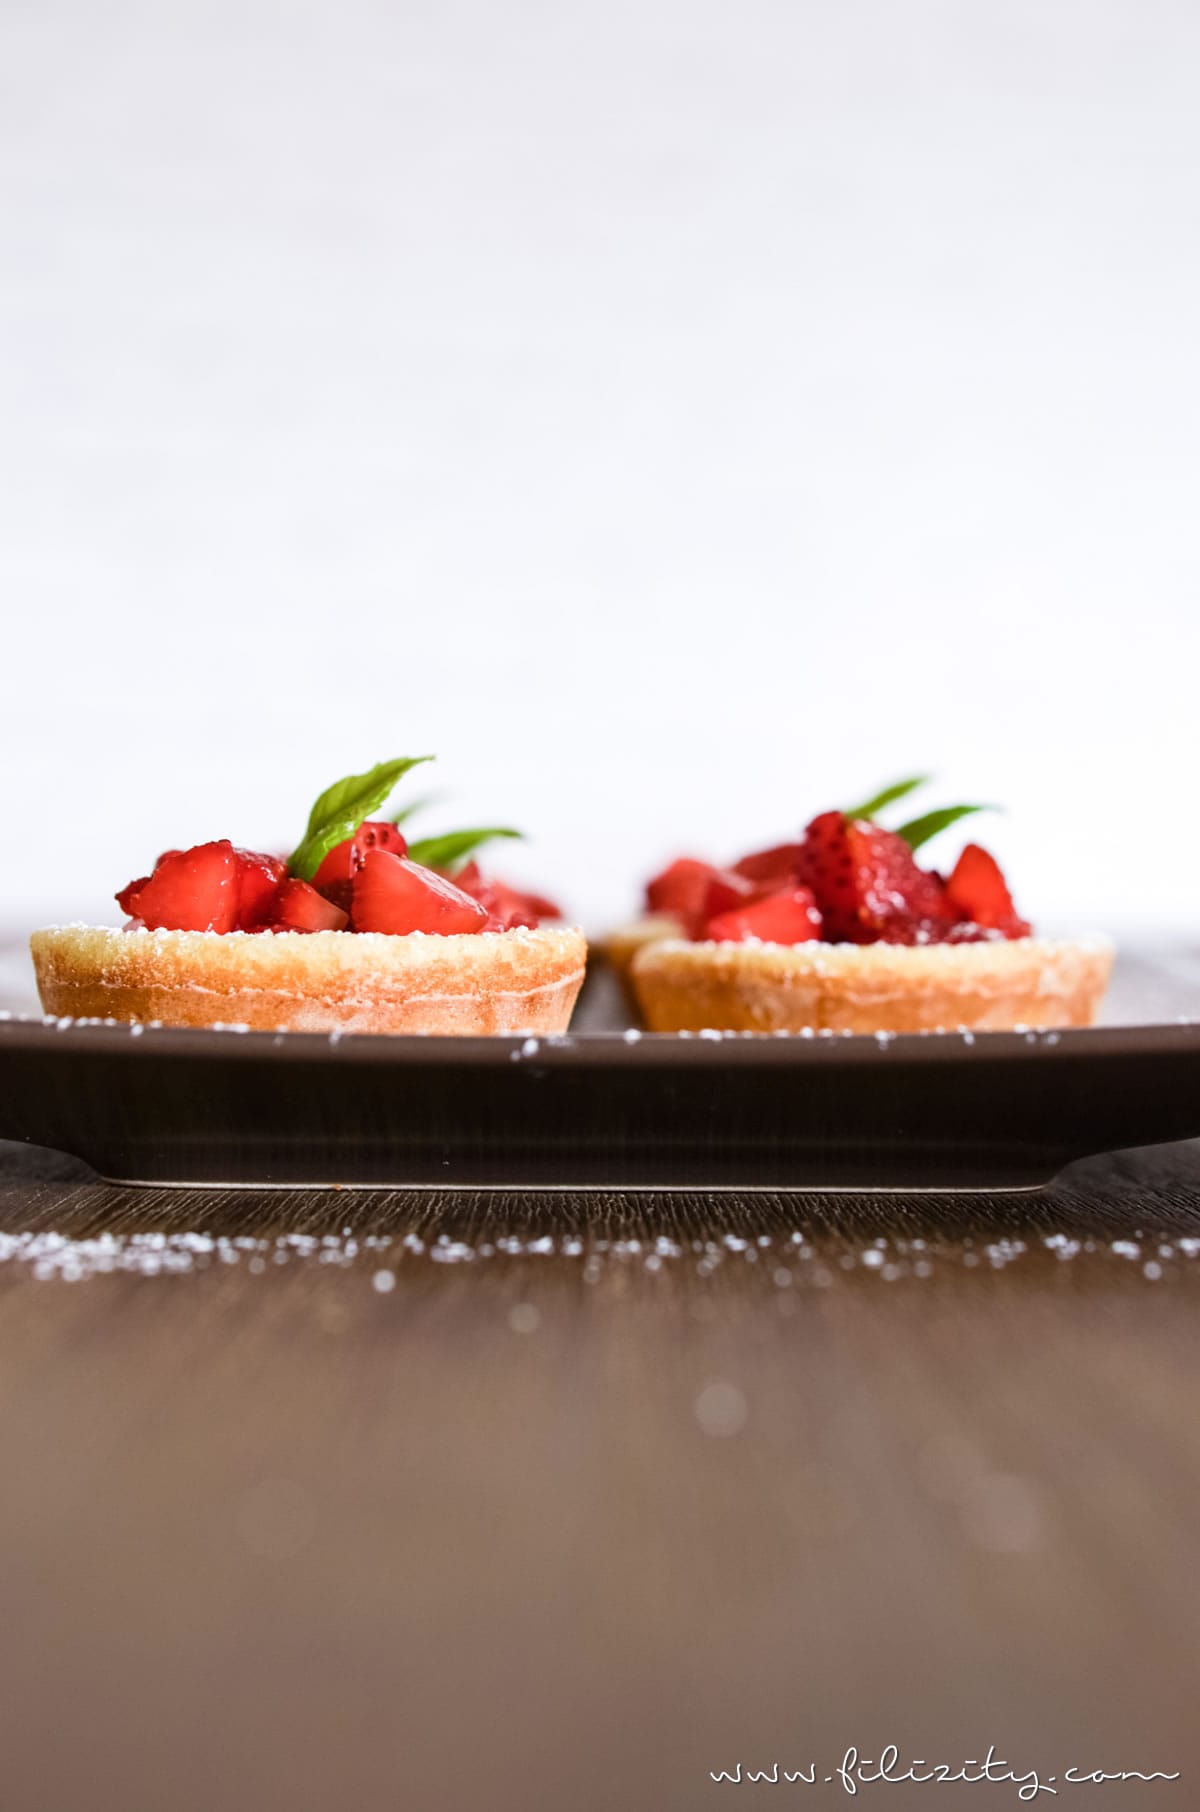 Sommer-Rezept: Pfannkuchen-Körbchen mit Erdbeeren oder anderem frischen Obst #pfannkuchen #erdbeeren